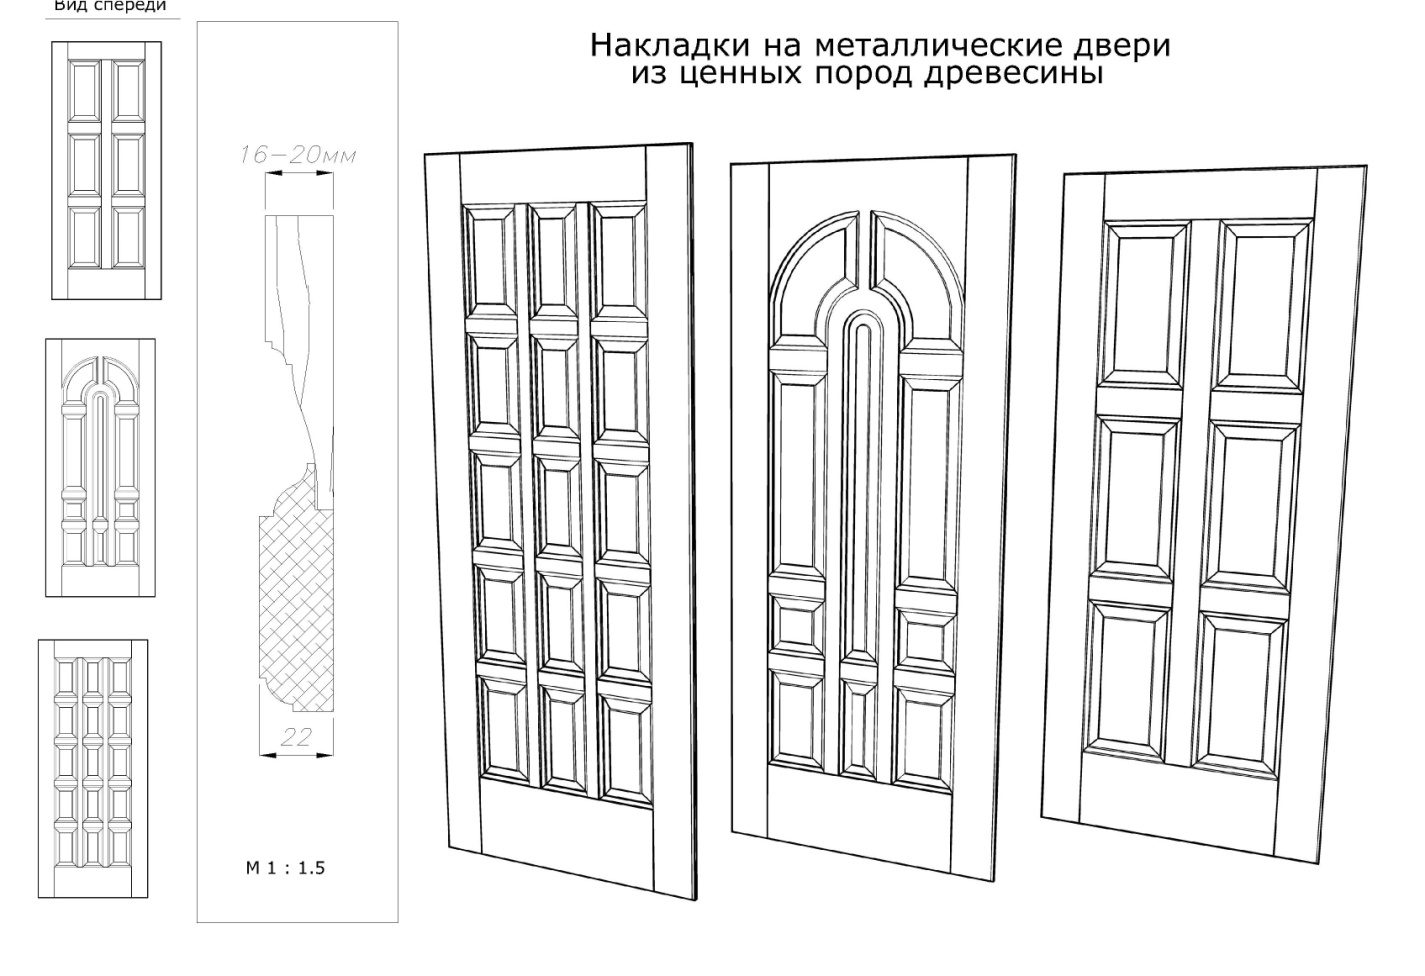 Накладки на металлические двери из ценных пород древесины